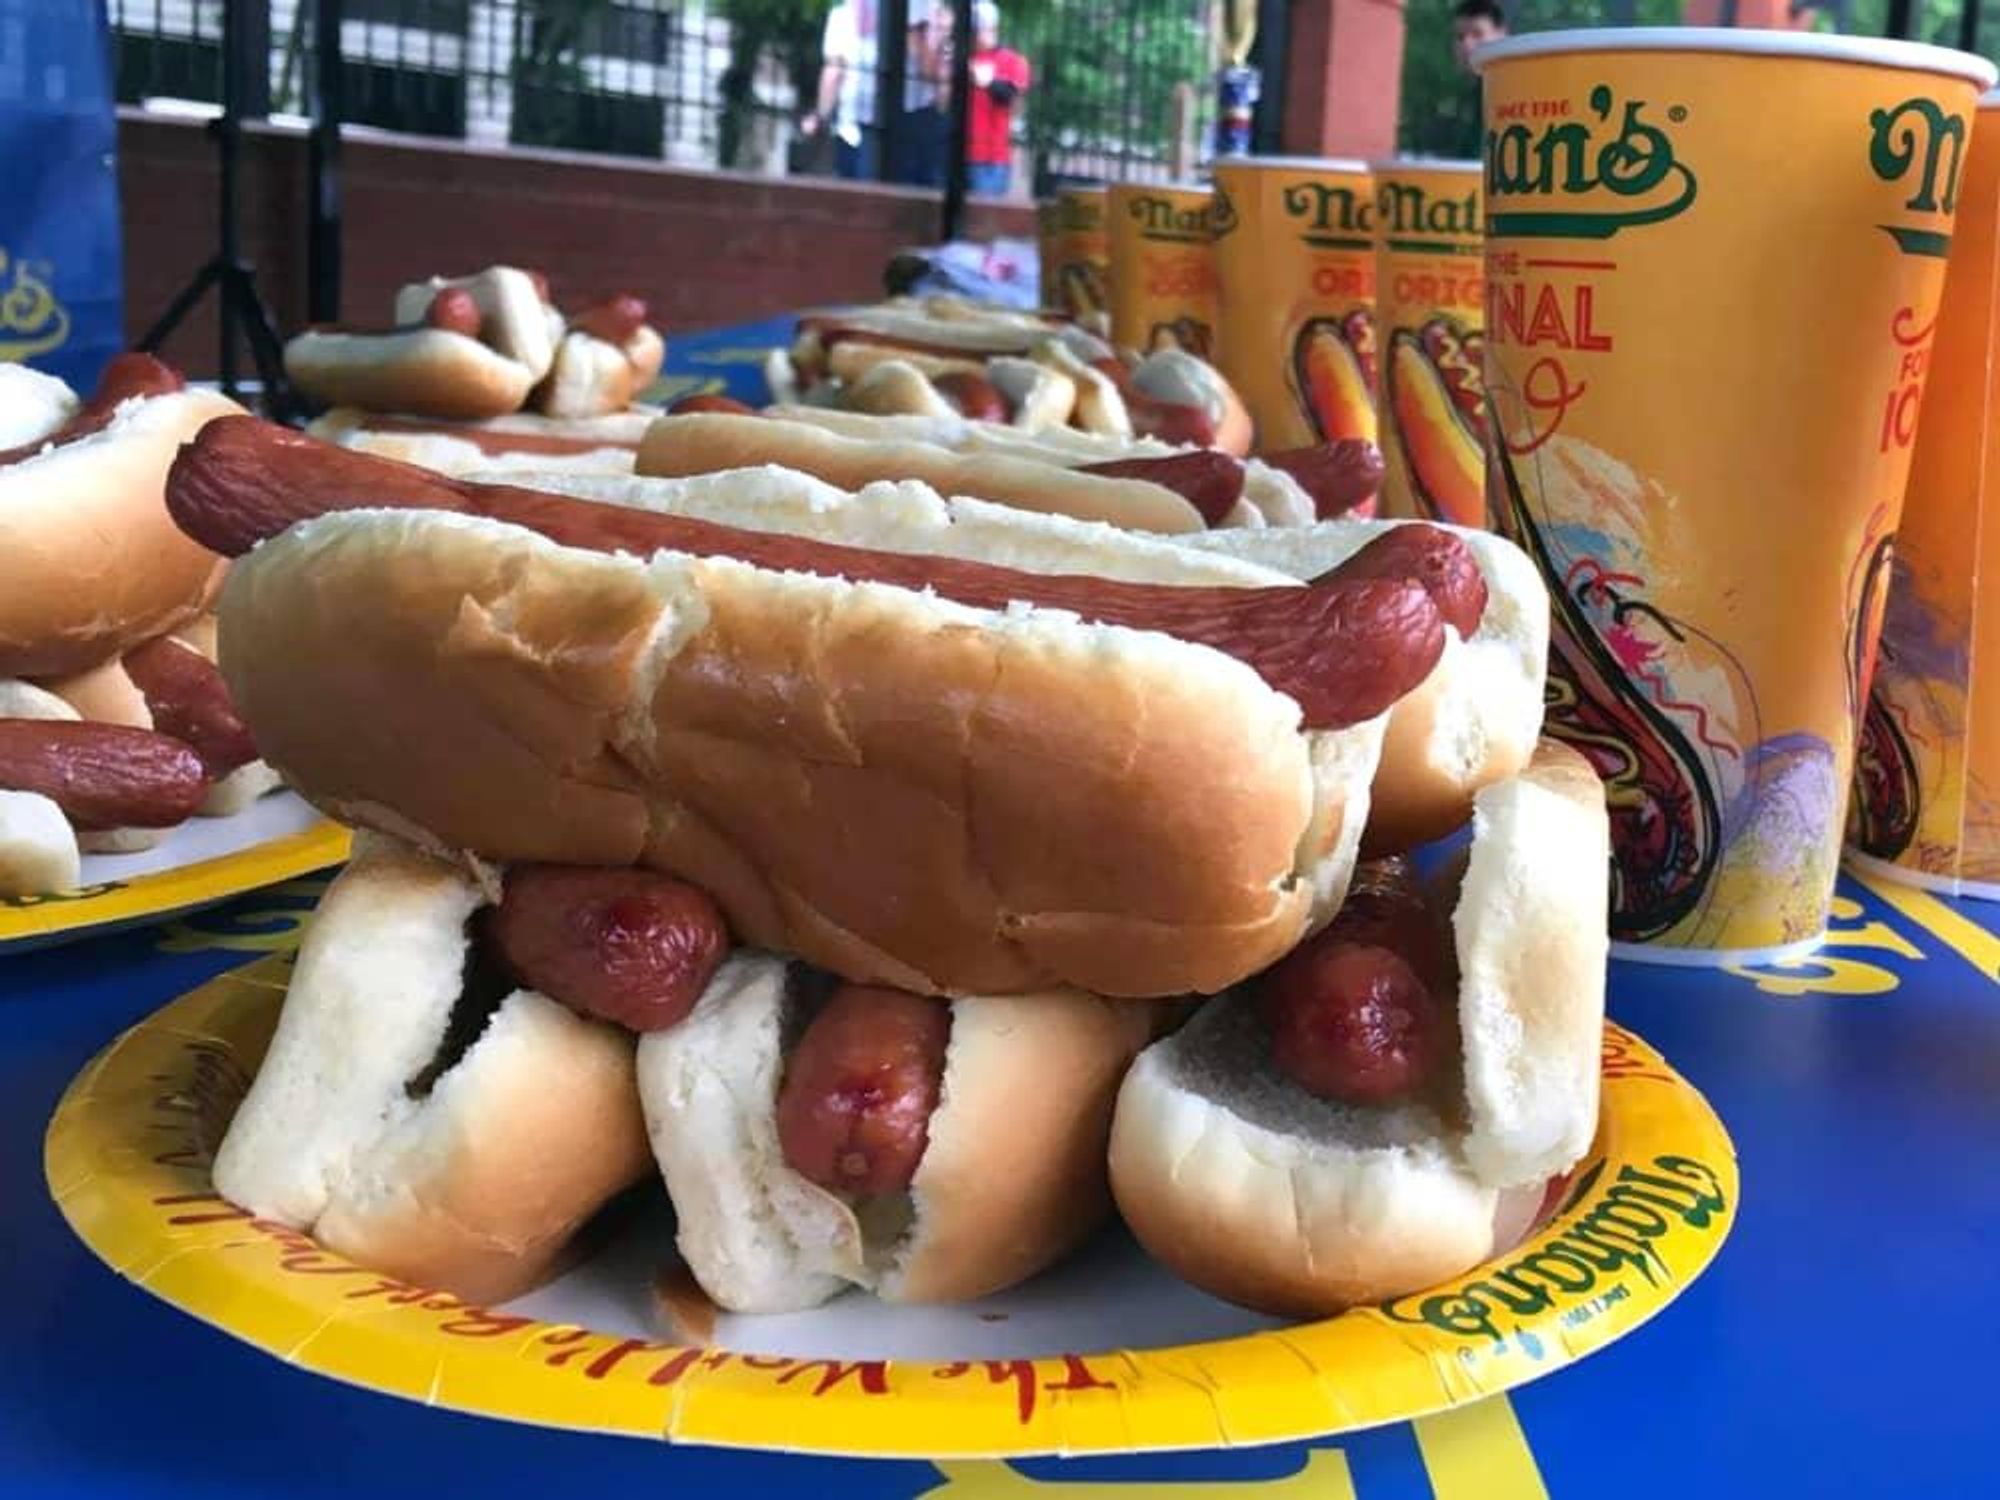 Houston, Nathans hot dog eating contest, July 2017